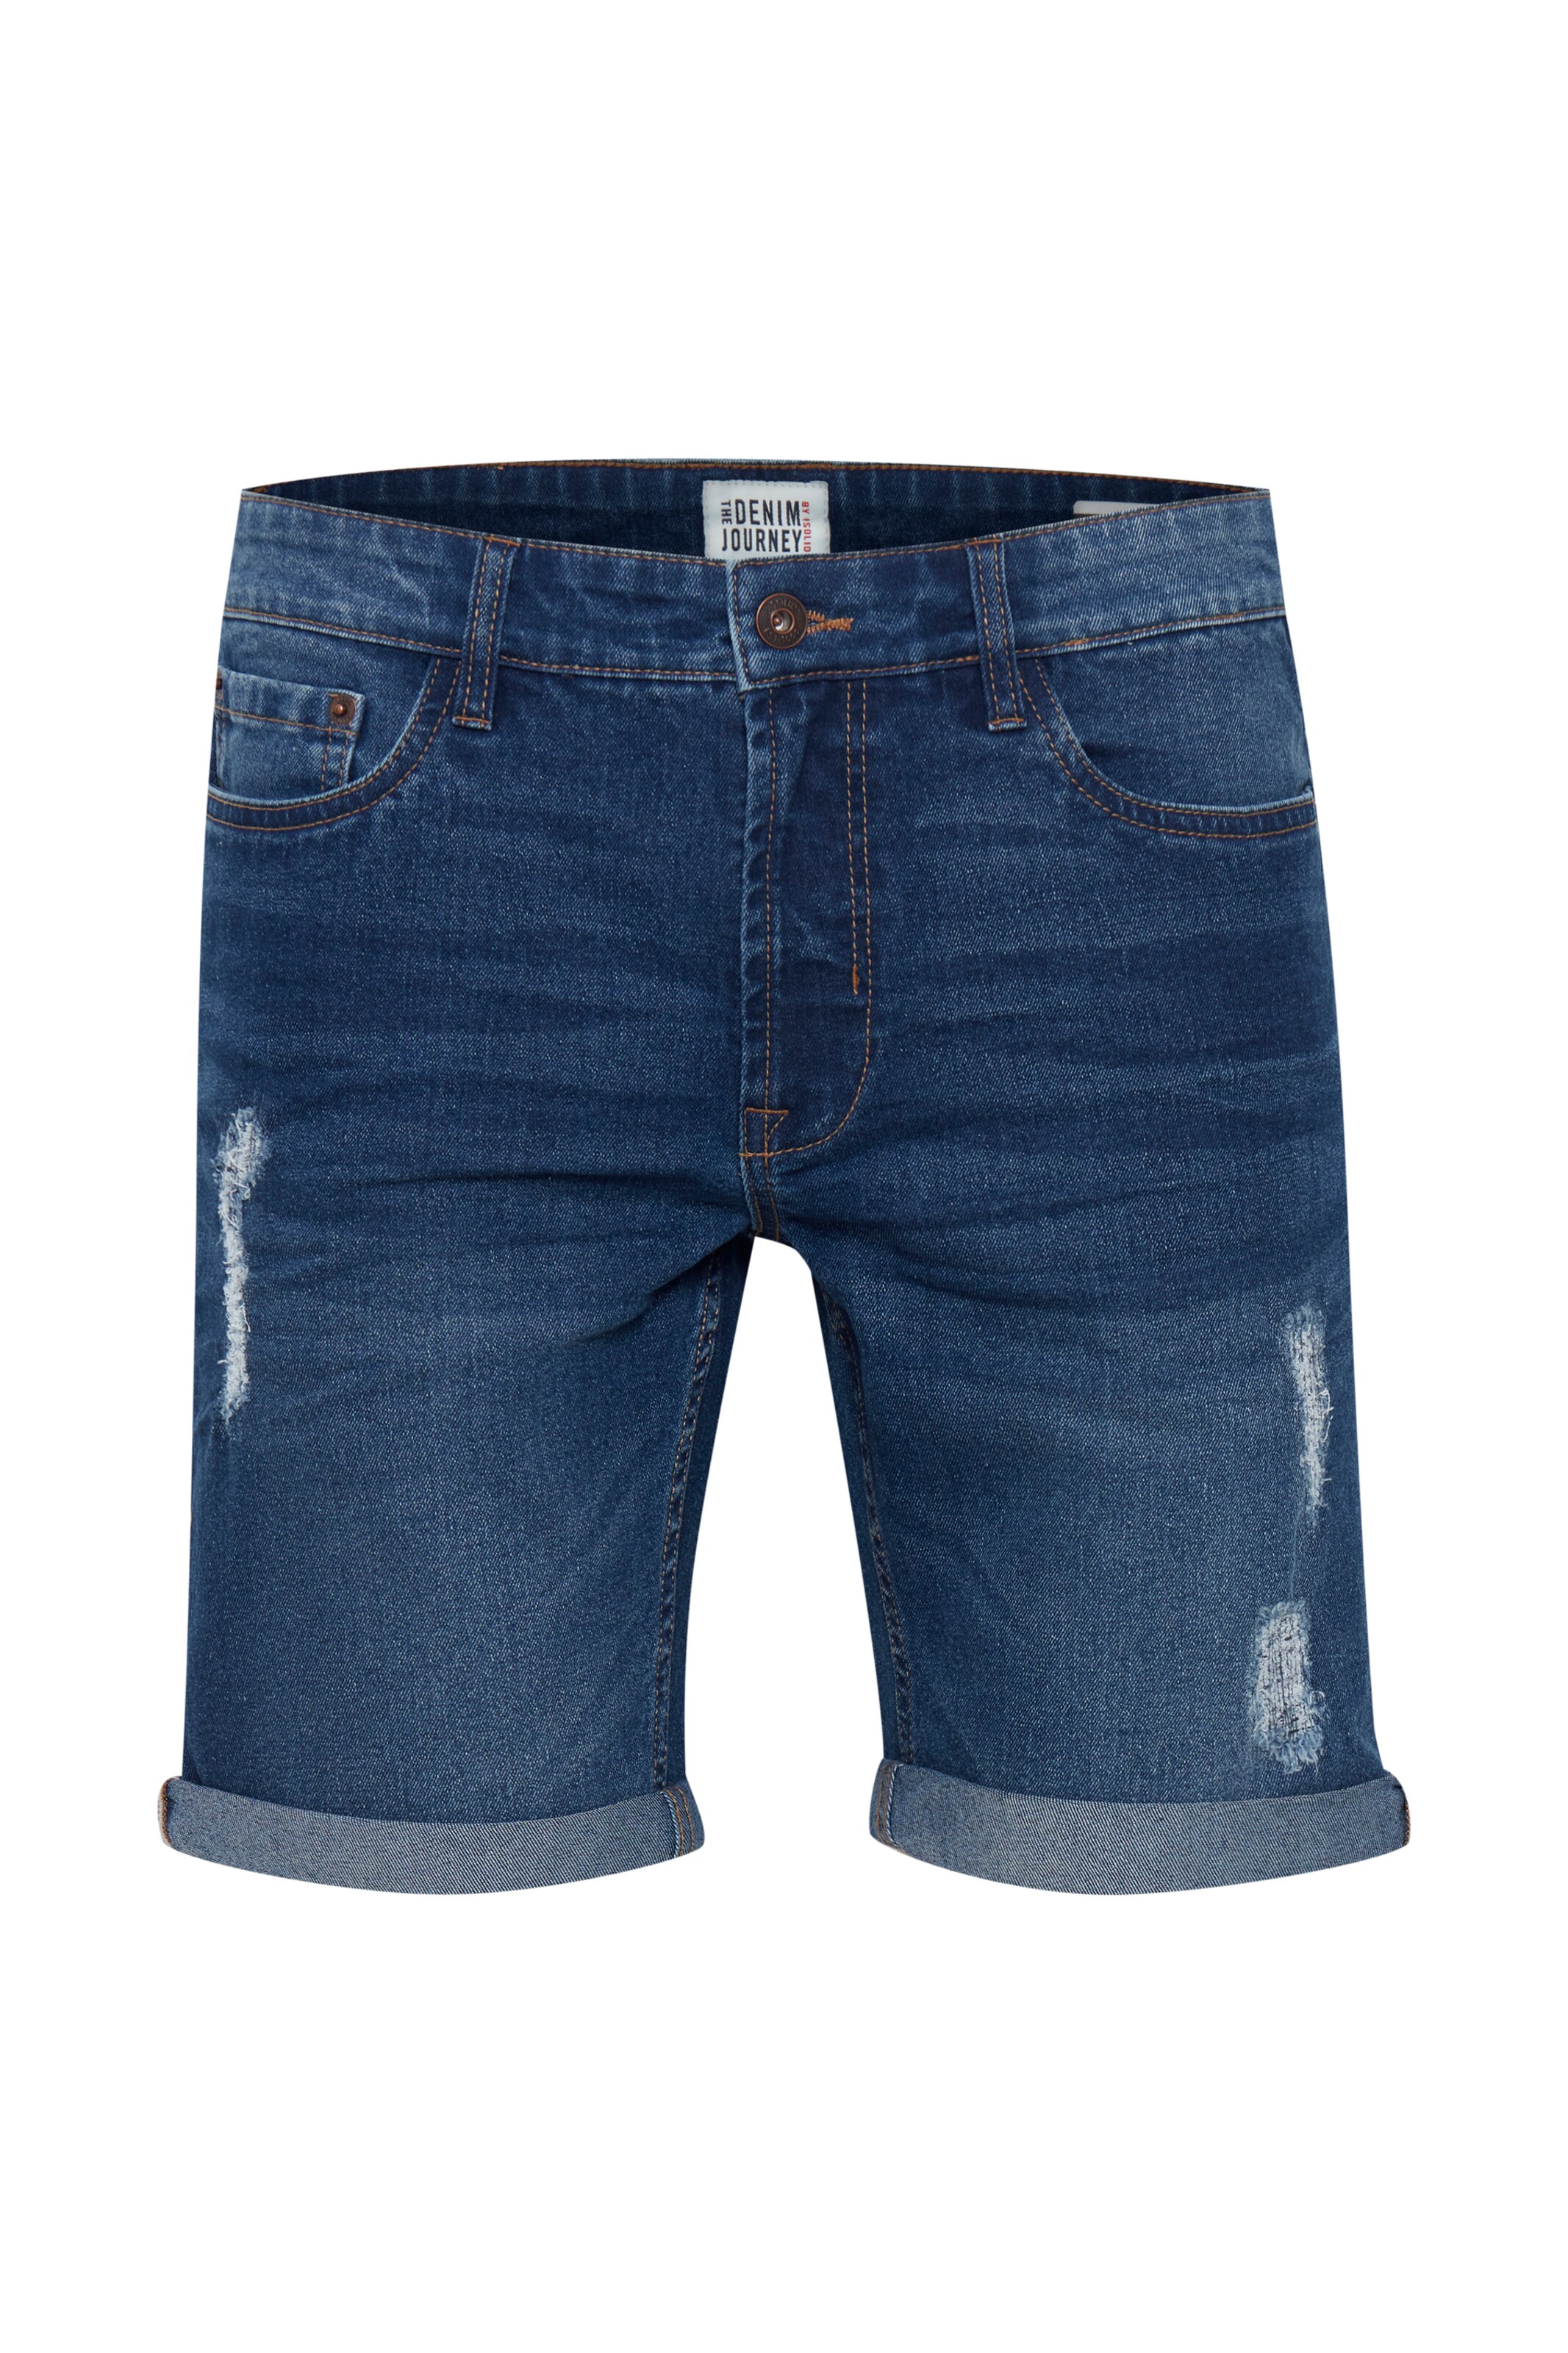 SOLID JOY SLIM Fit Grey Jeans. The Denim Journey. W32 - L32. £5.00 -  PicClick UK